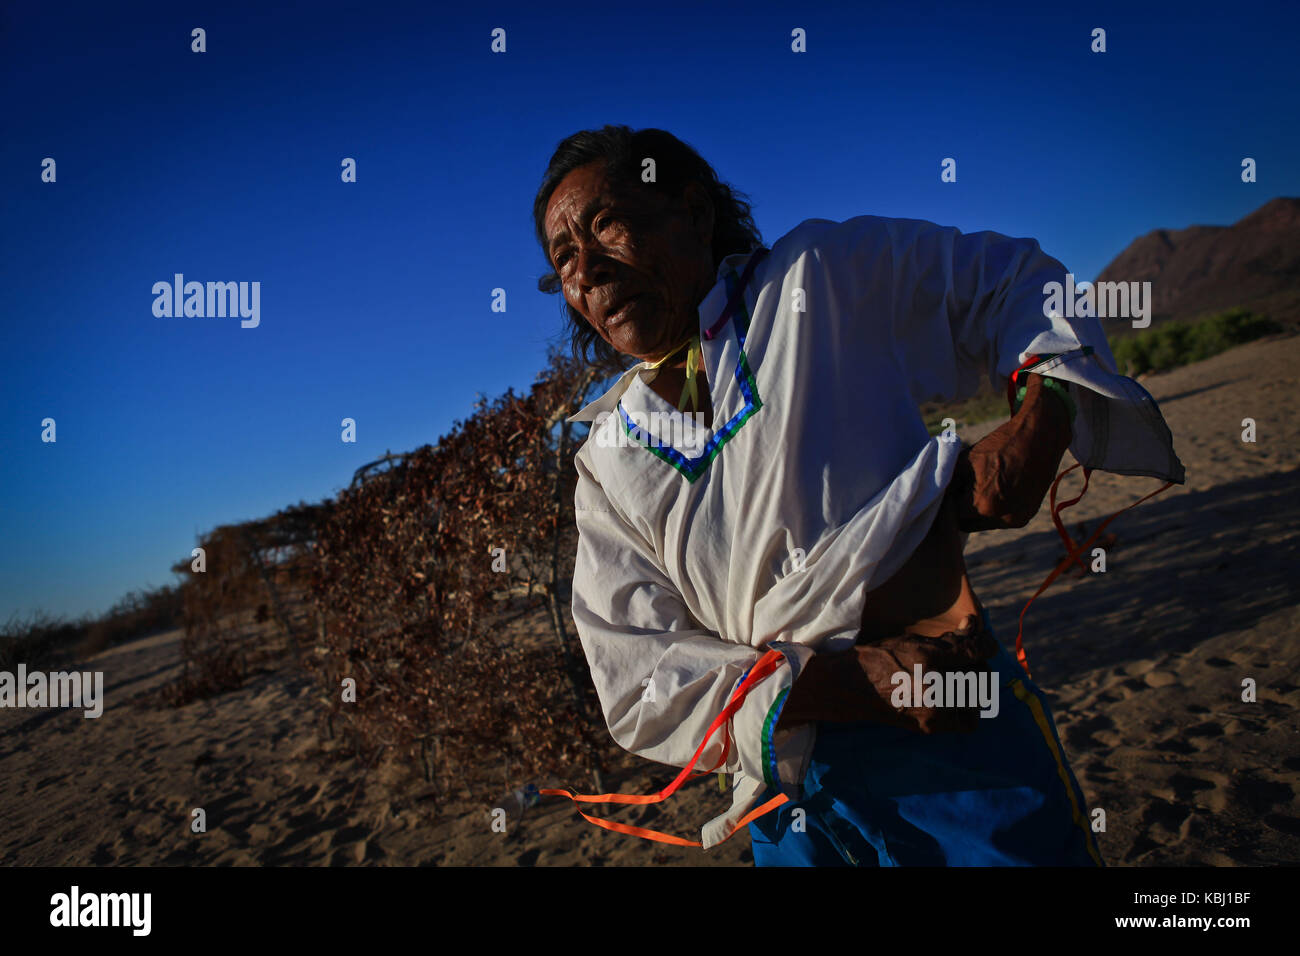 Francisco ¨Capapo Barnet, sciamano del gruppo etnico seri è un personaggio mitologico della nazione Comcaac, conosciuta anche come Punta Chueca nel deserto di sonora Messico. Foto Stock